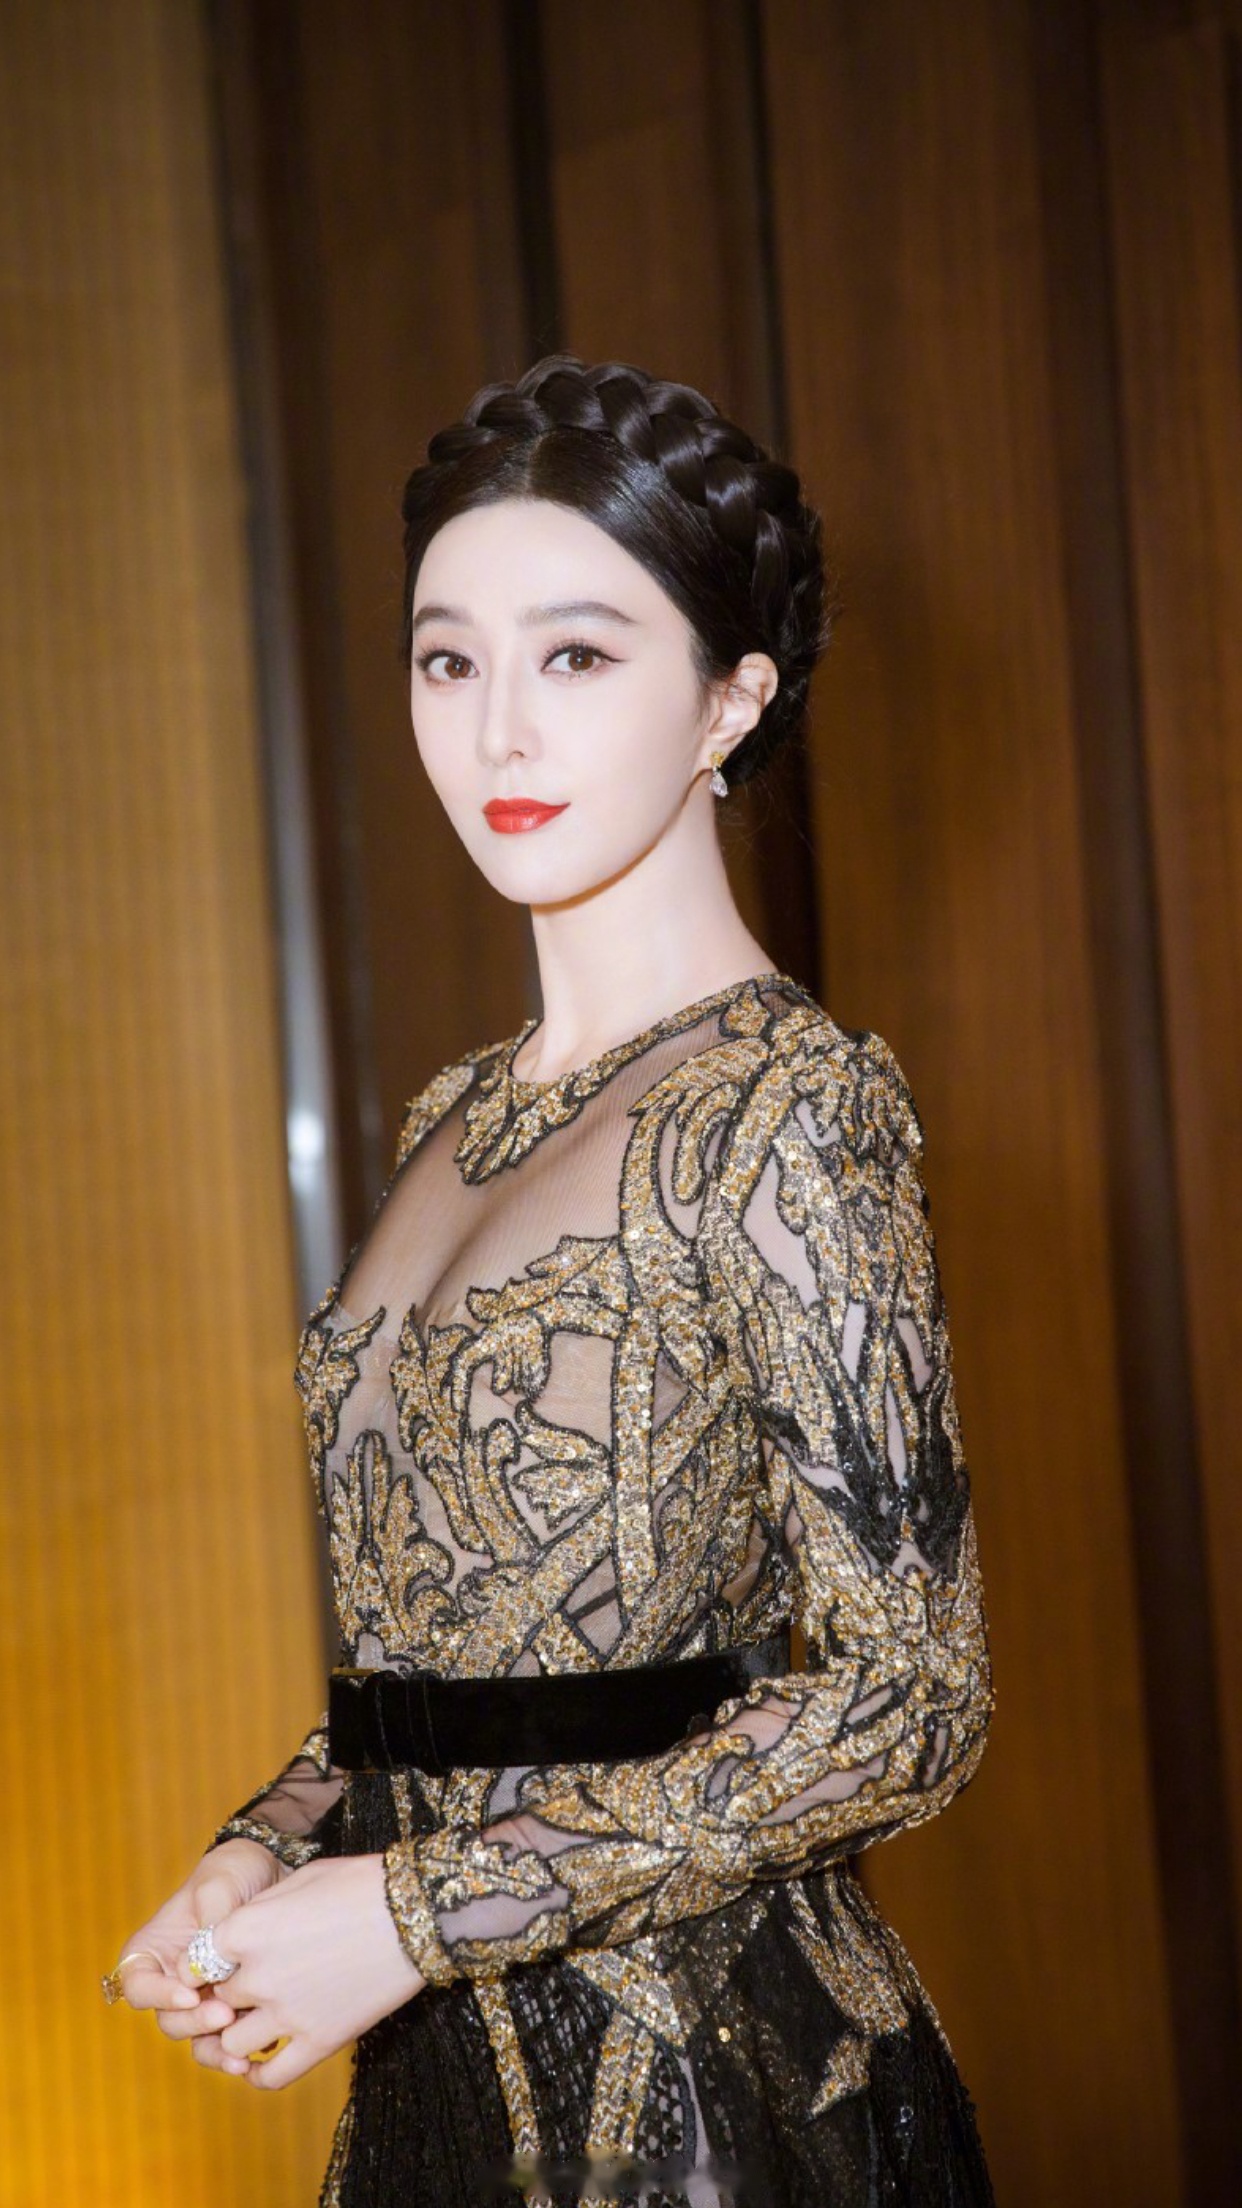 中国女演员范冰冰成为泰国kingpower王权免税全球形象代言人,这是新的